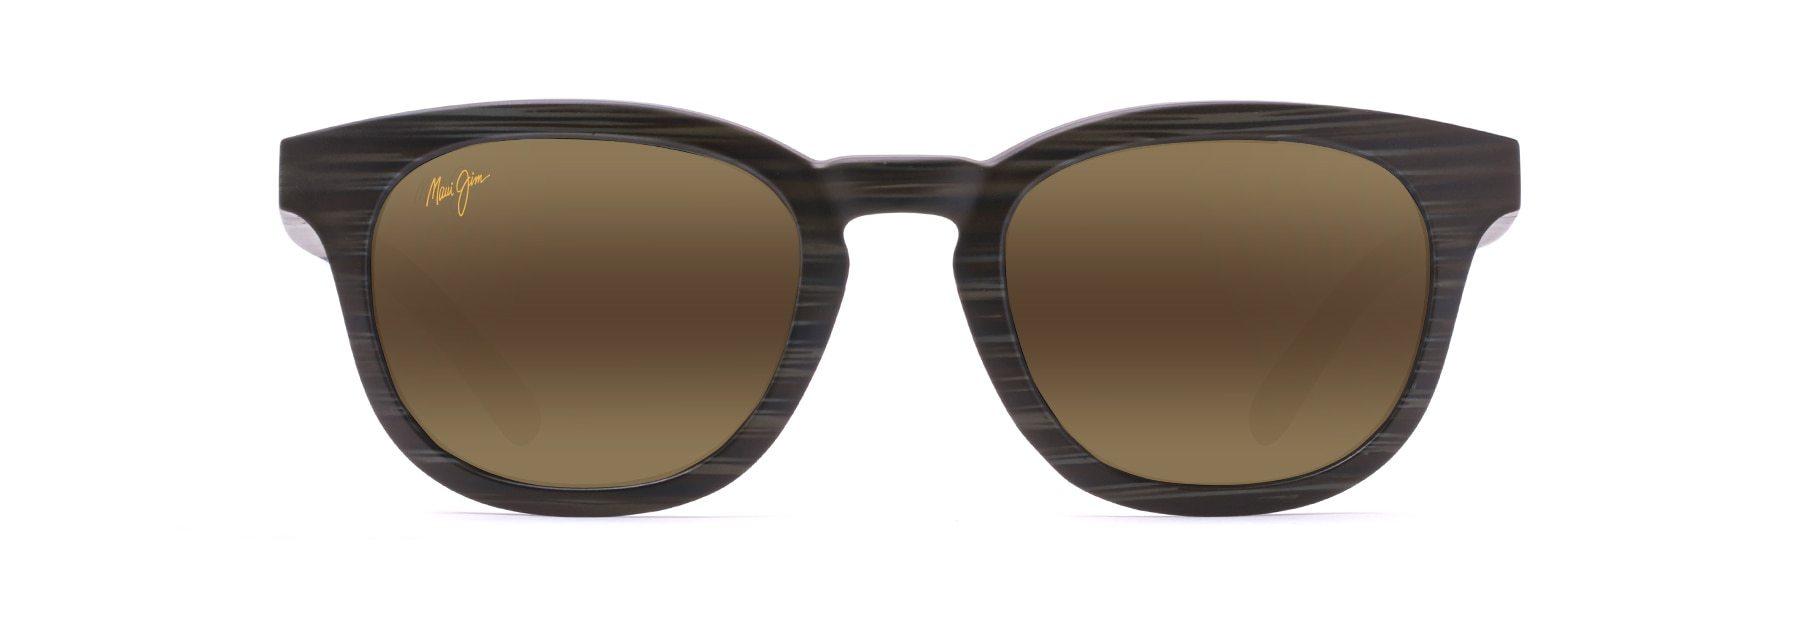 MyMaui Koko Head MM737-012 Sunglasses